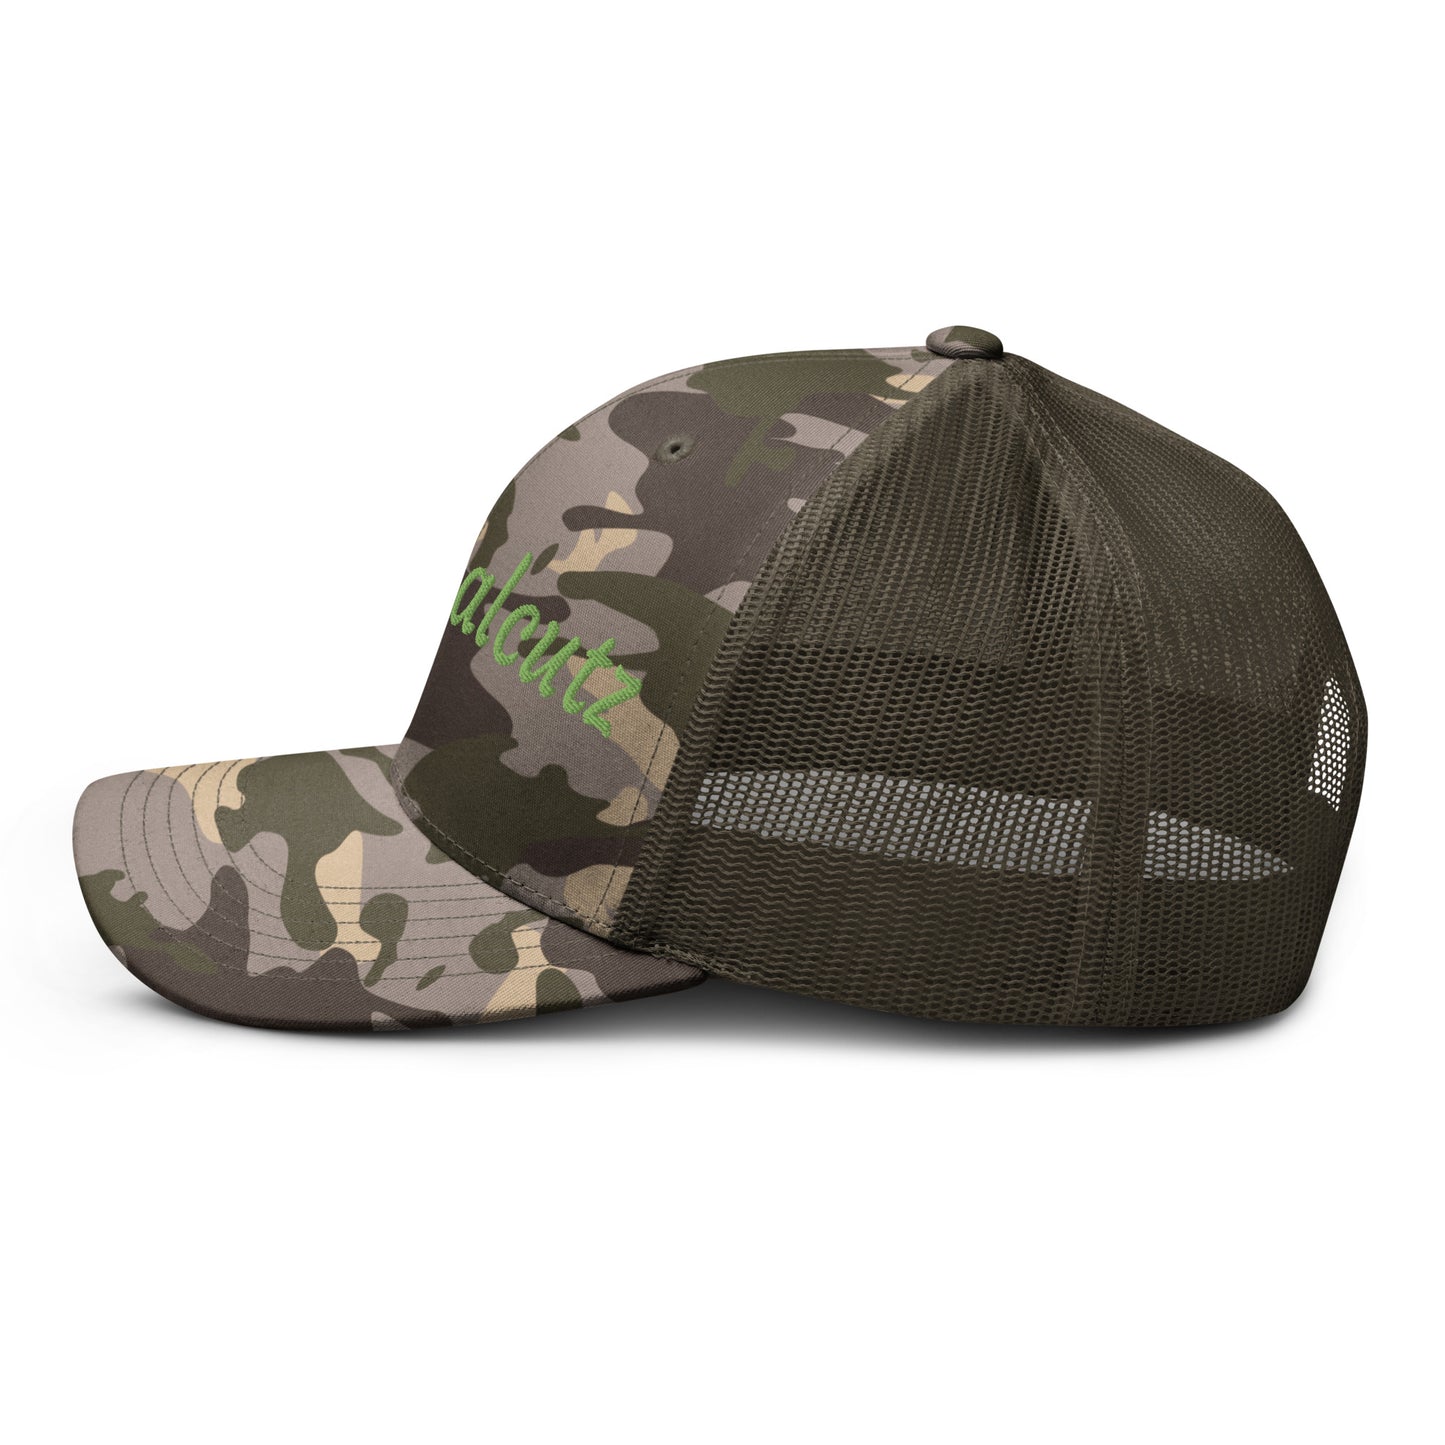 Realdealcutz Camouflage trucker hat